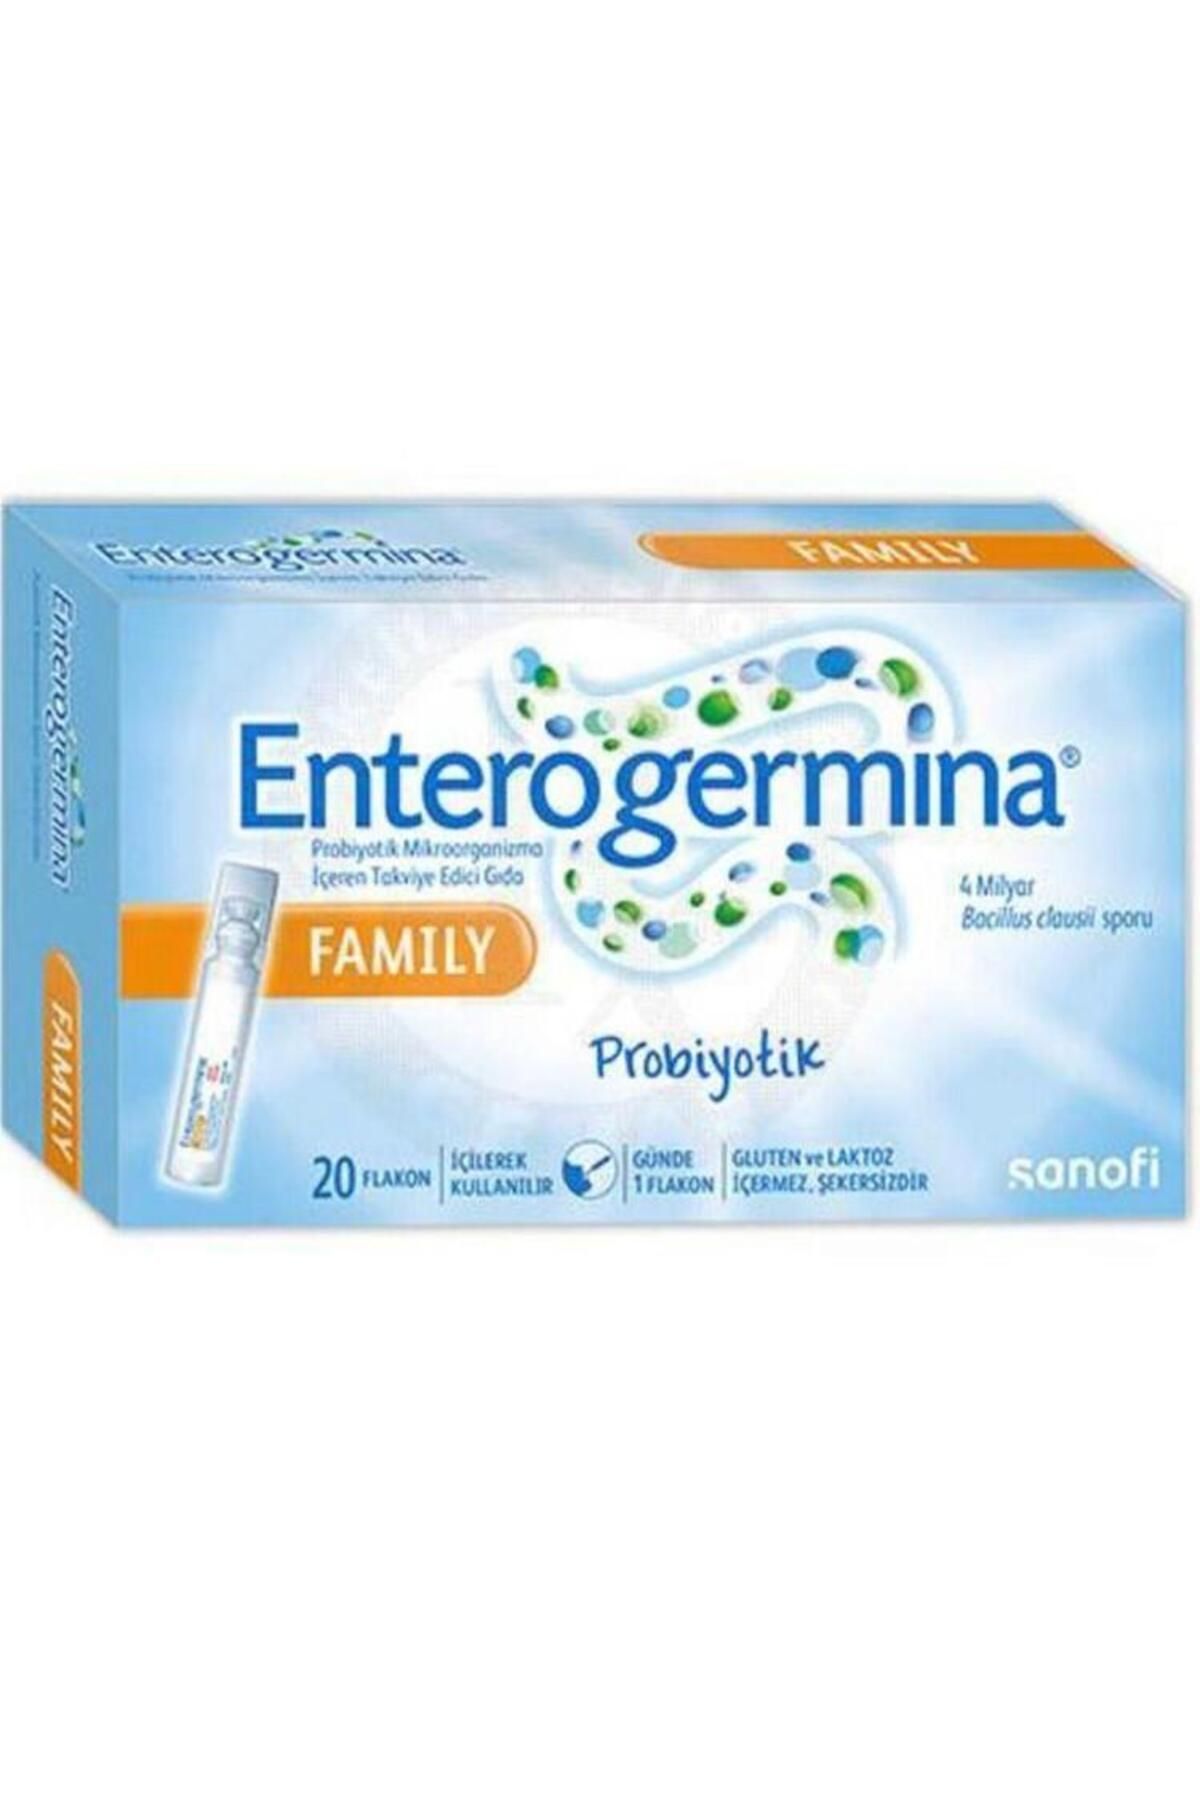 Enterogermina Family 5 ML x 20 Flakon